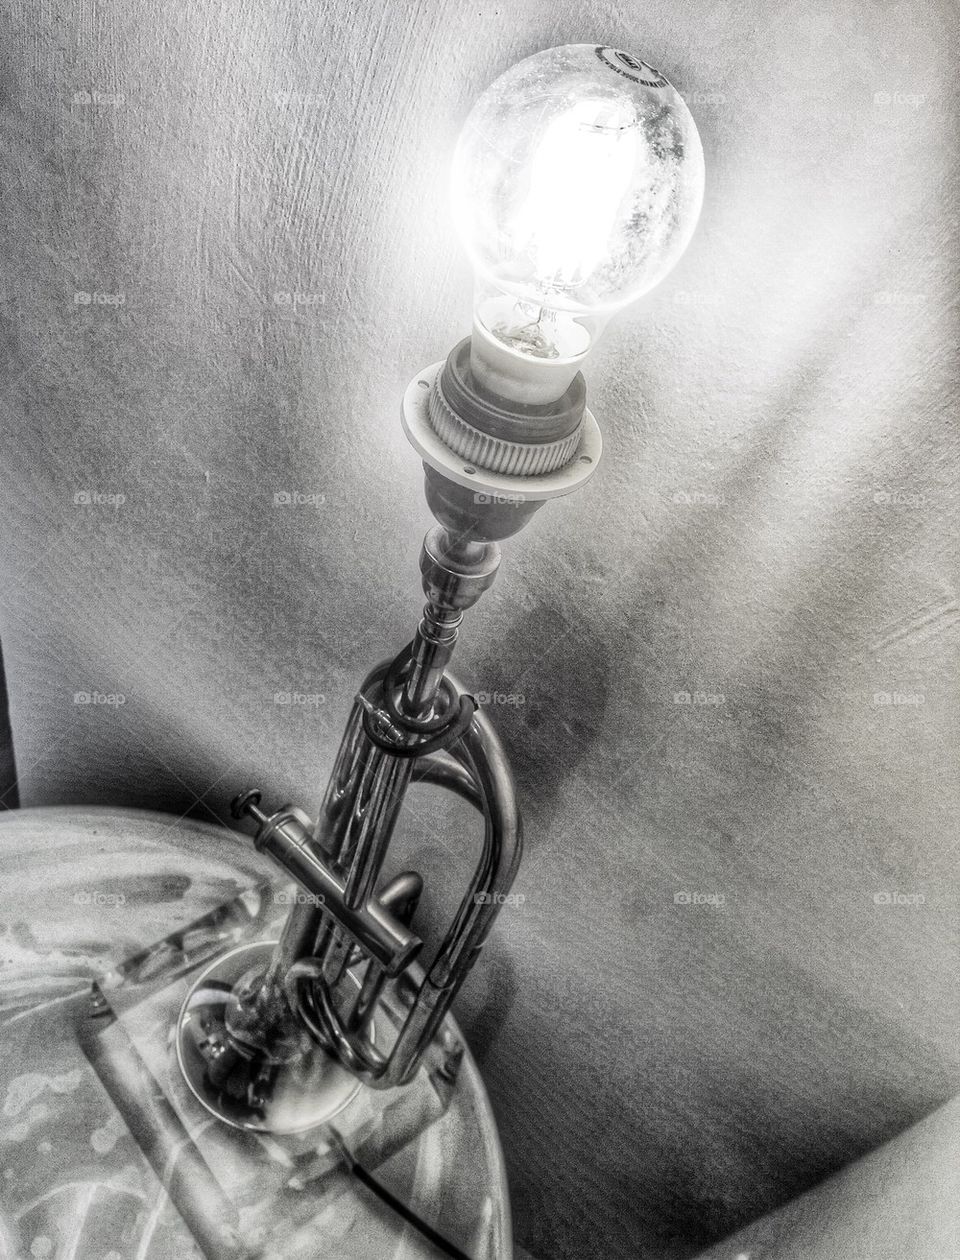 Trumpet lamp